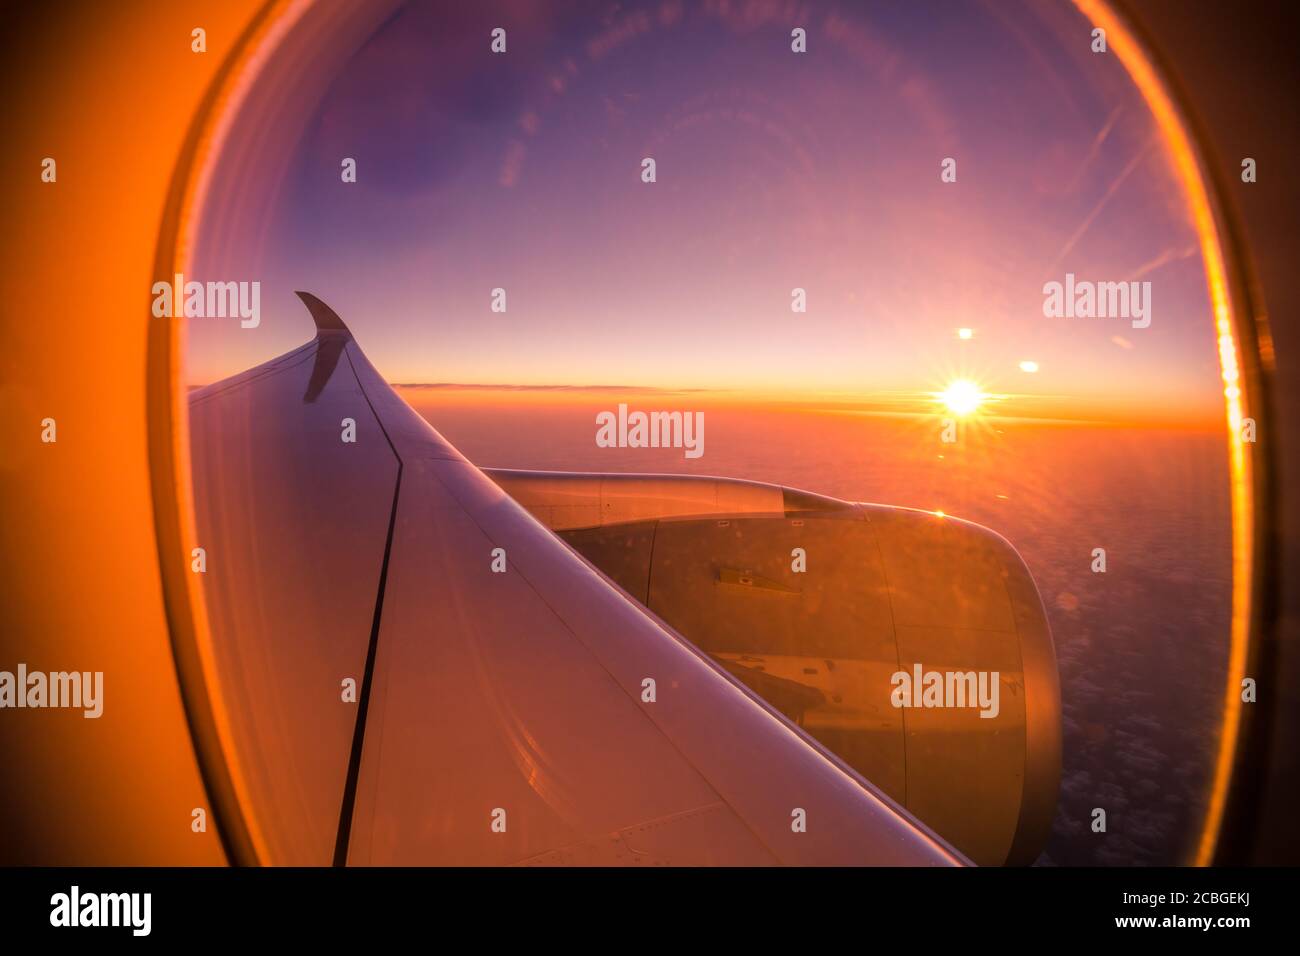 Wunderschöne malerische Aussicht auf den Sonnenuntergang durch das Flugzeugfenster. Schöner Sonnenuntergang, Himmel die Ansicht von oben, Flugzeug fliegende Ansicht von innen Fenster Flugzeuge Stockfoto